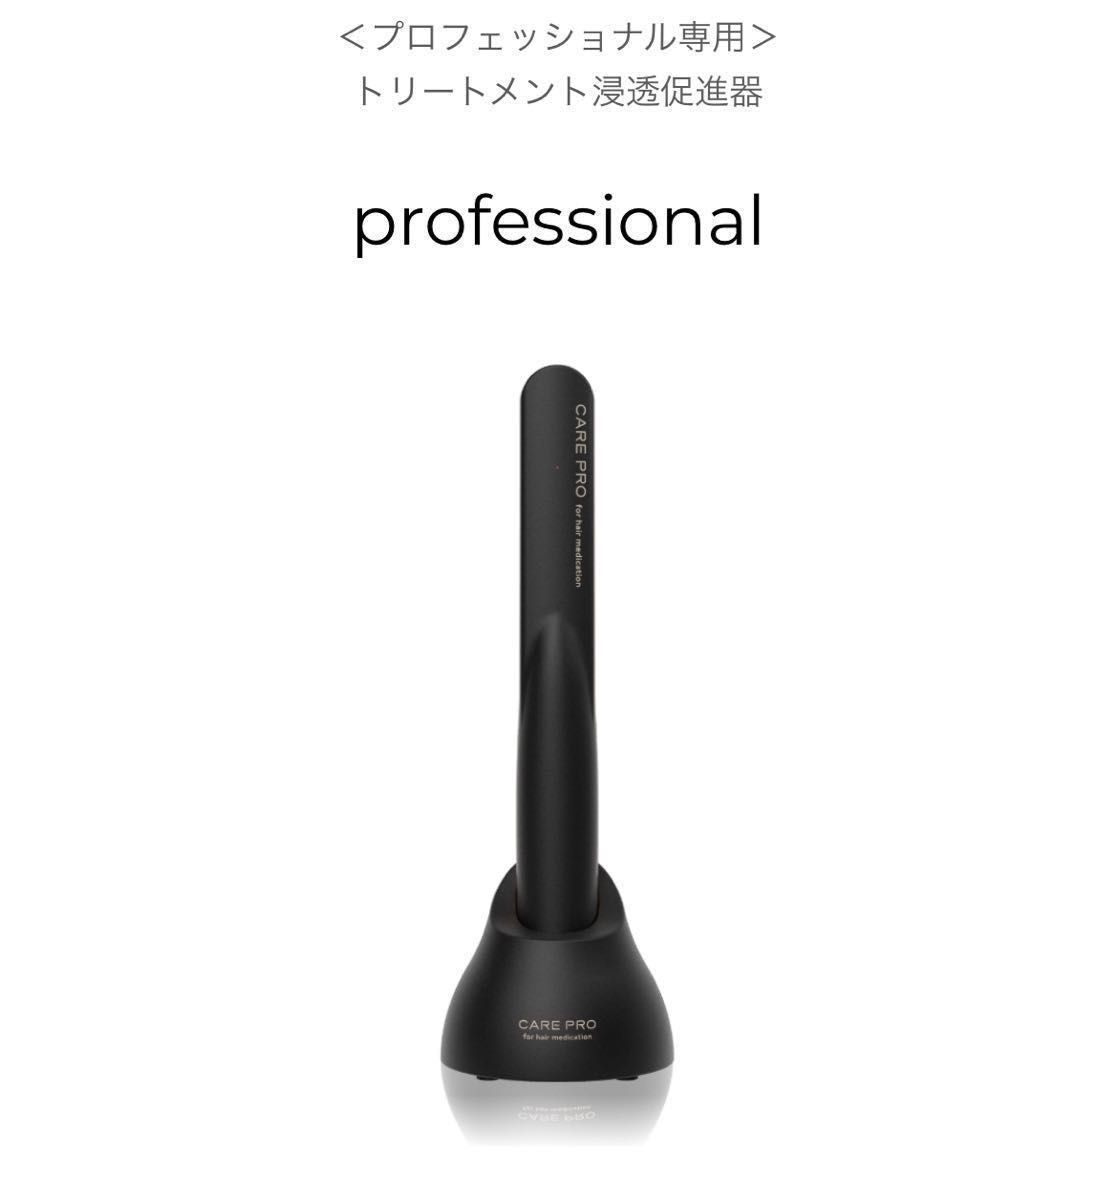 【正規品・新品】CARE PRO ケアプロ 超音波アイロン hair 美容機器